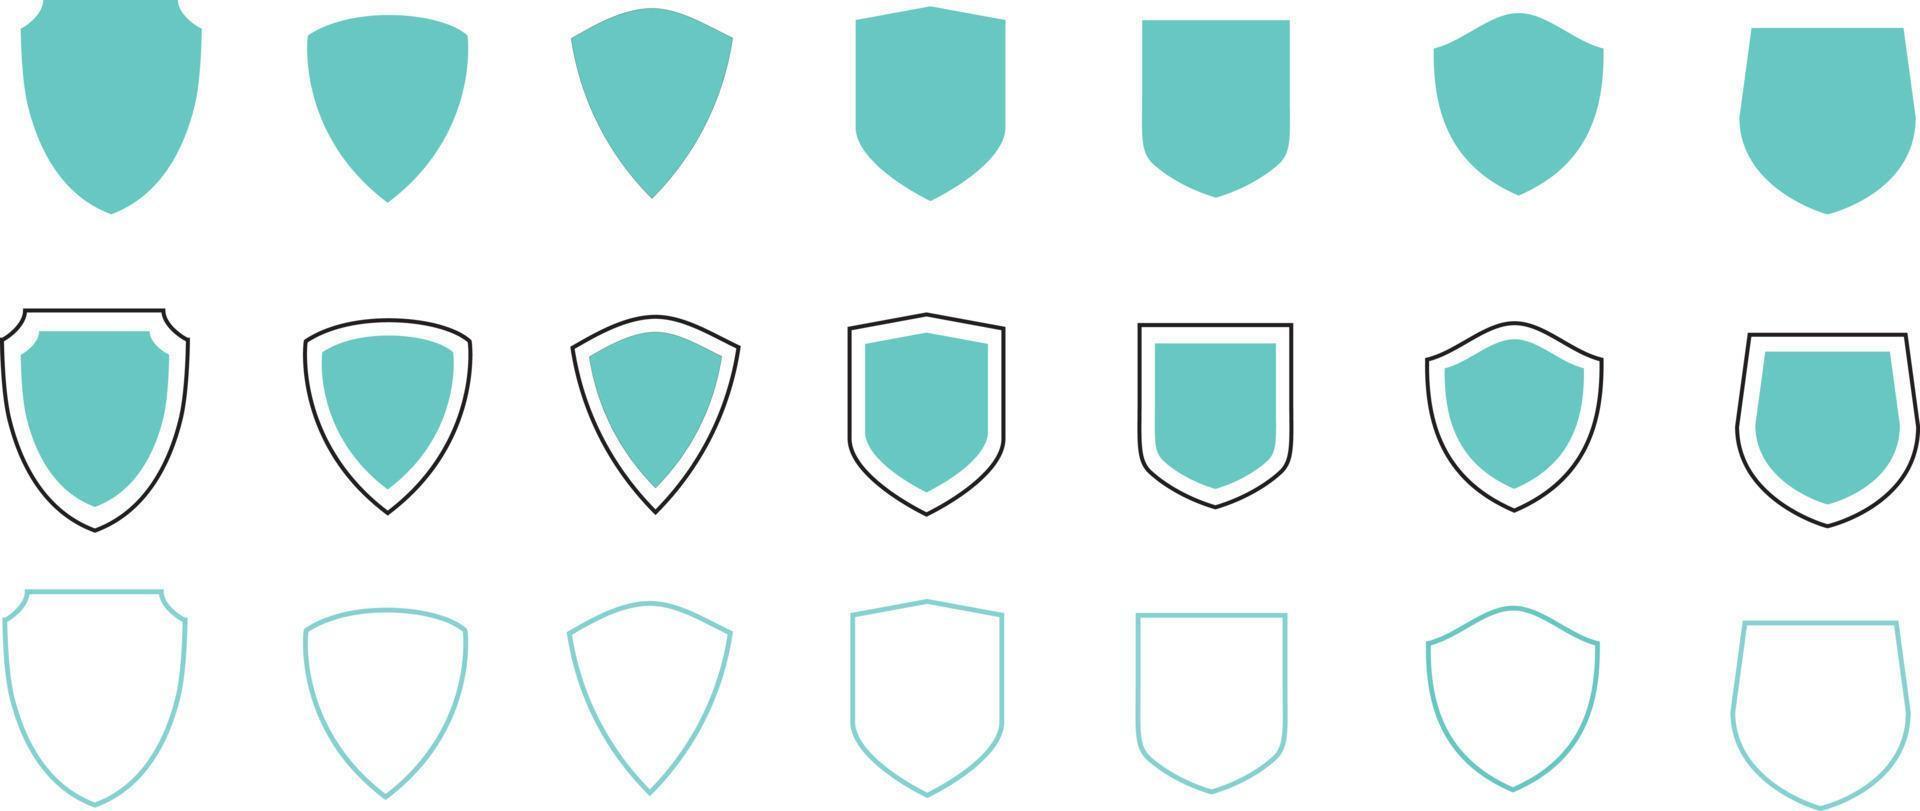 escudos vetor casaco braços conjunto sinais símbolos adesivos Projeto elementos